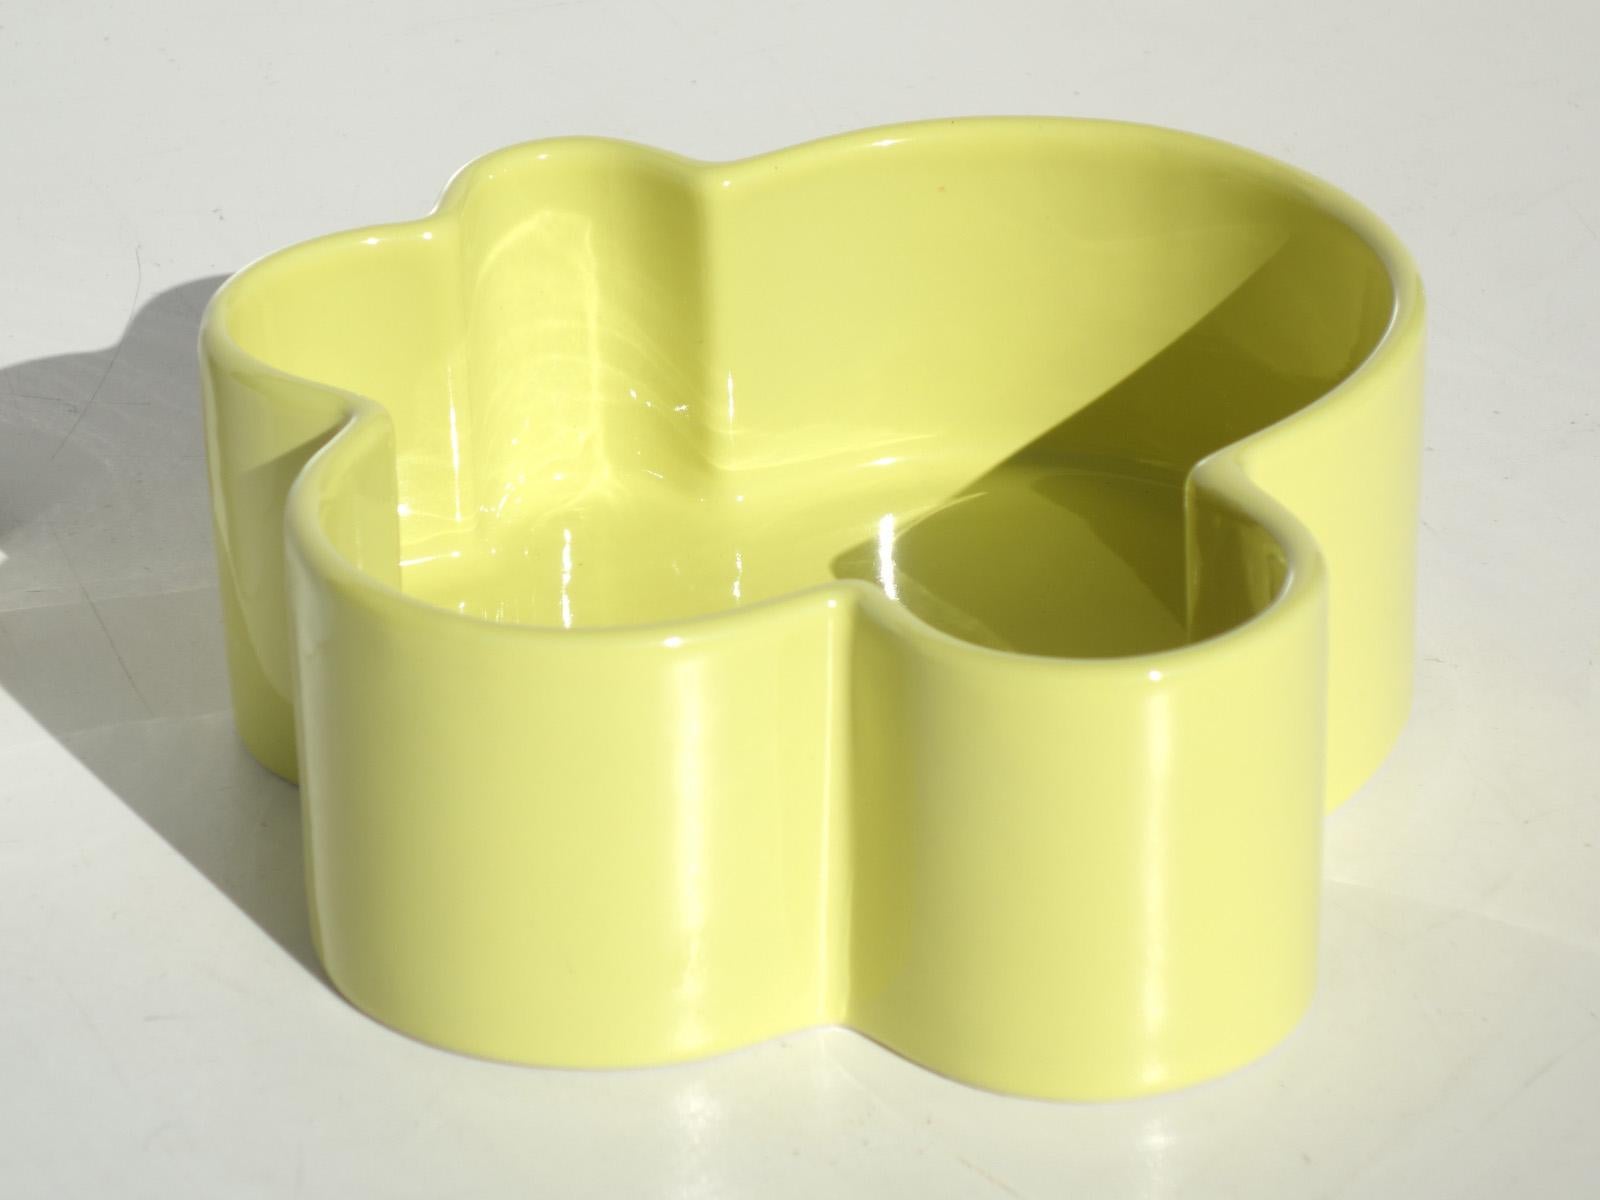 White and yellow ceramic bowls
Excellent condition
Measures: H 7.5 x W 16 x D 10 cm
H 8 x W 20 x D 20 cm.